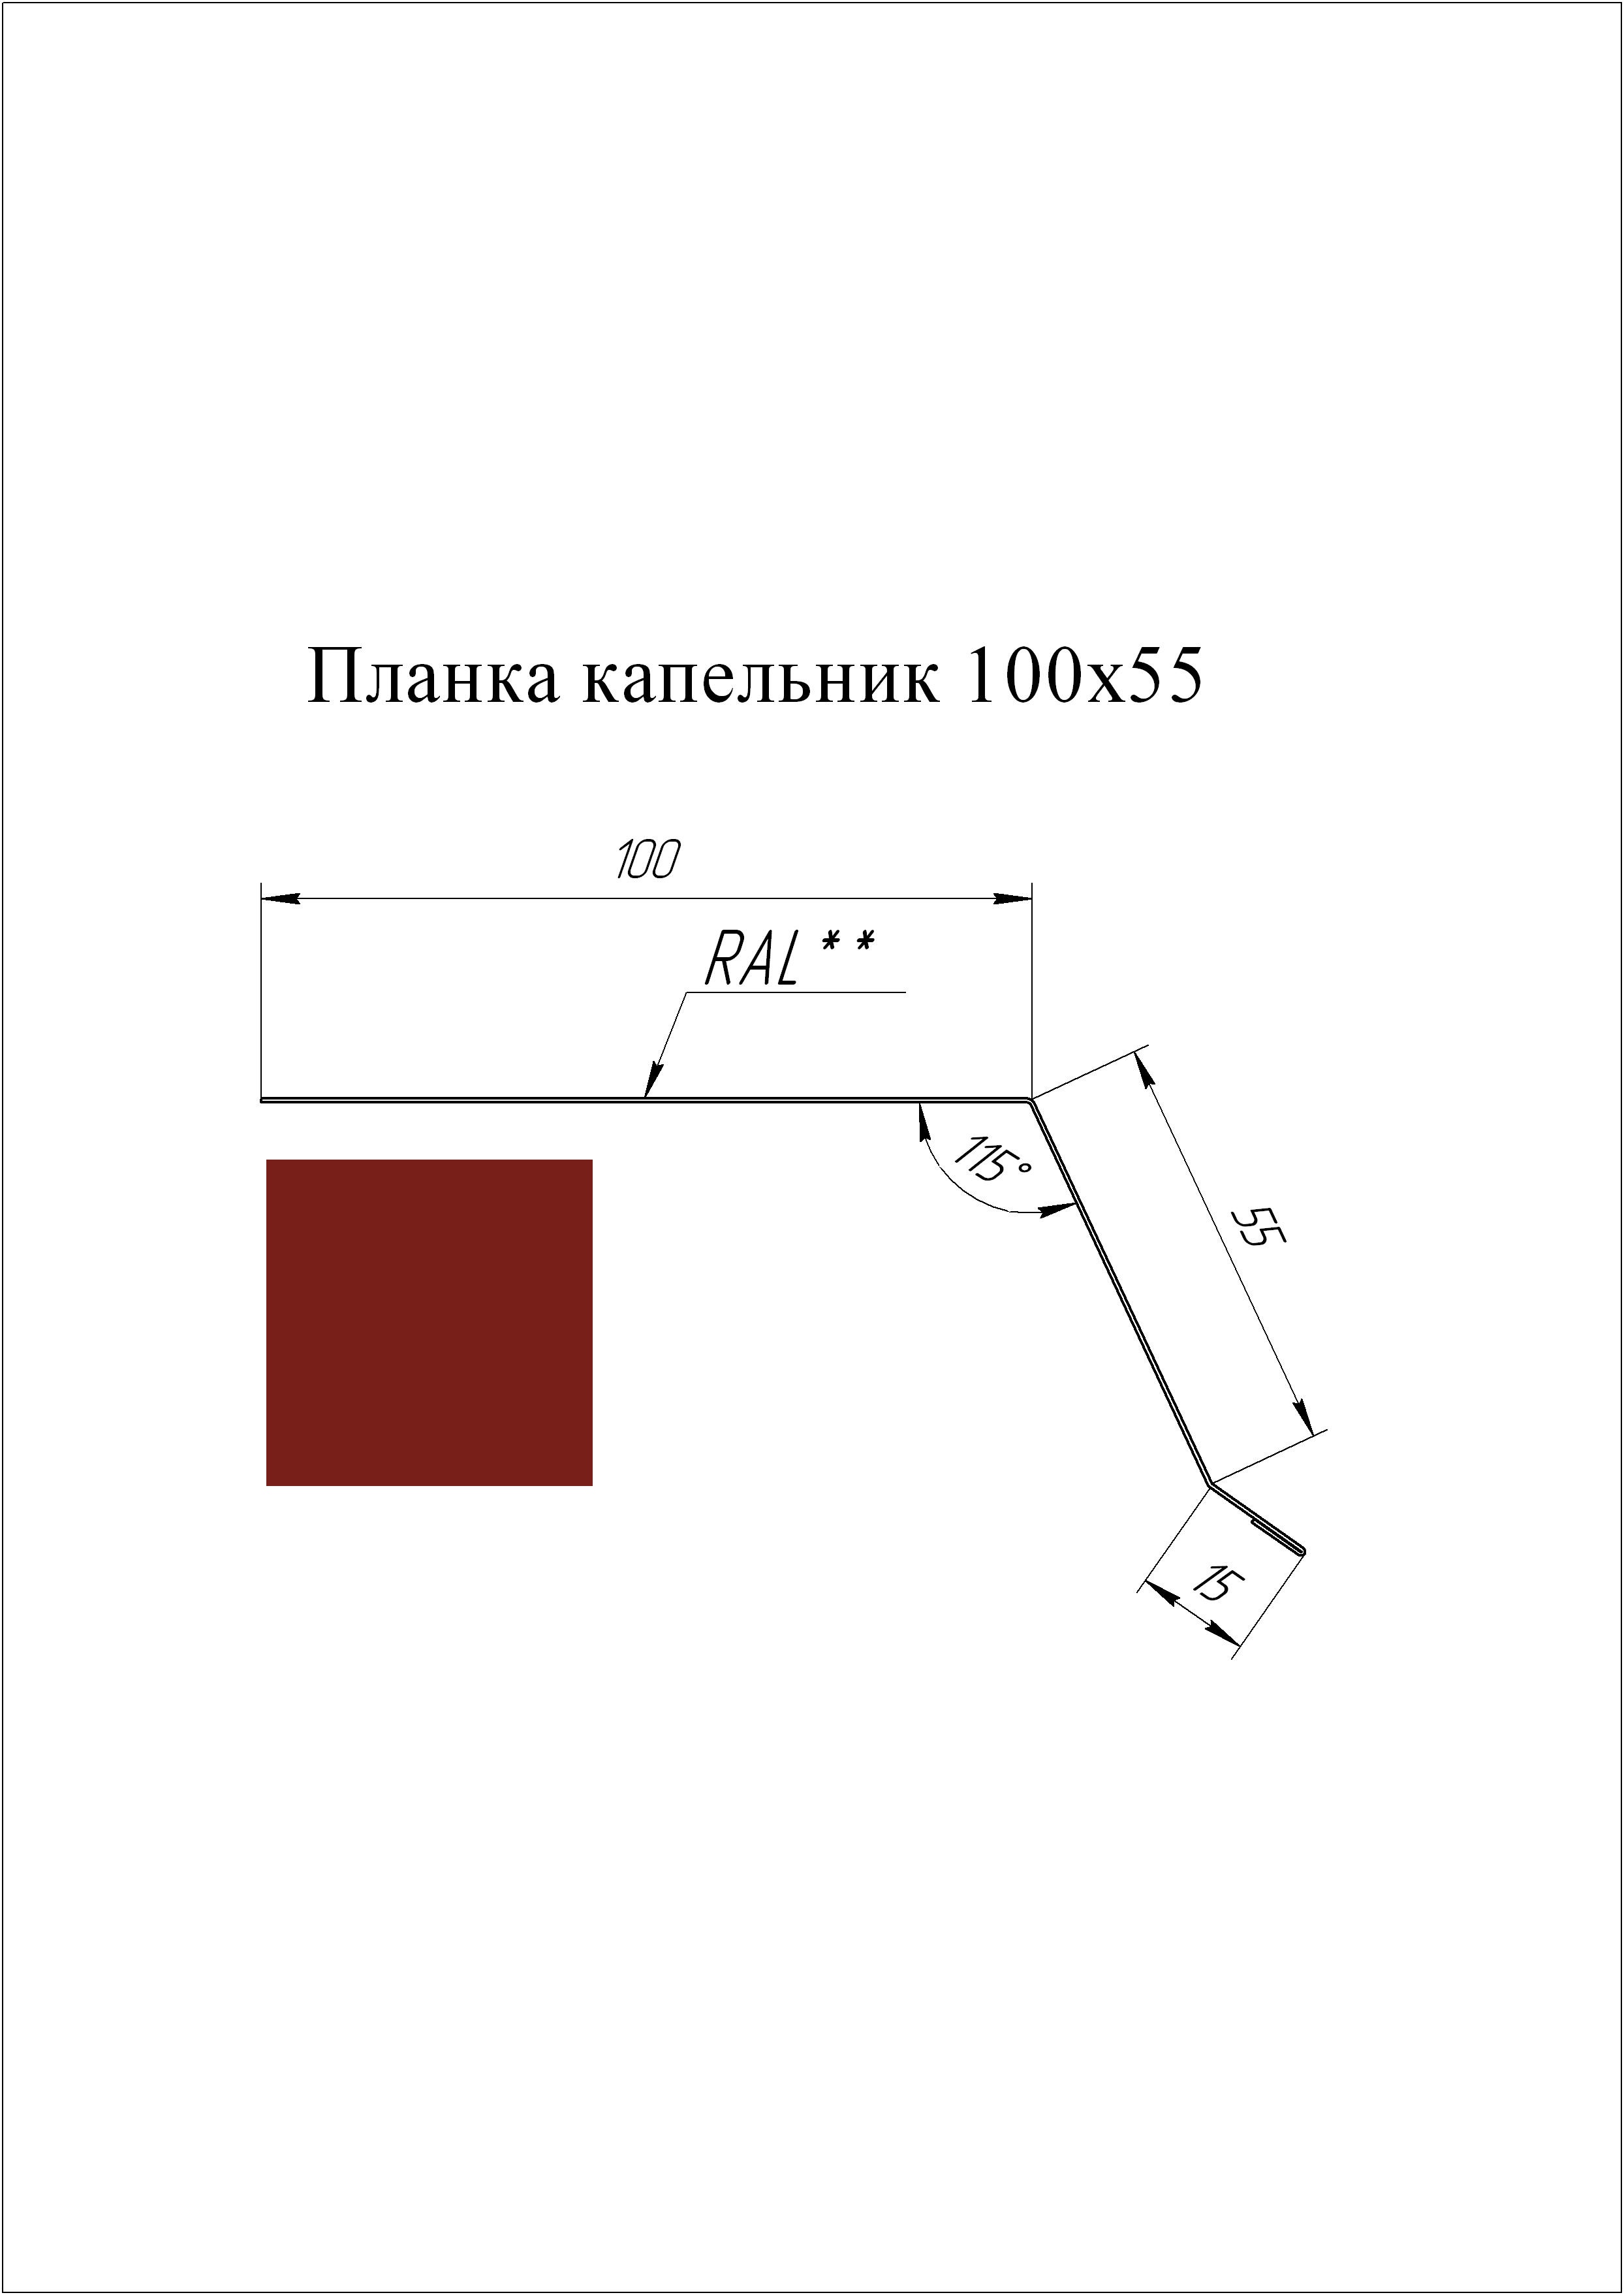 Планка капельник 100*55 мм L=3 м GL PE-полиэстер 0,45 RAL 3011 - коричнево-красный